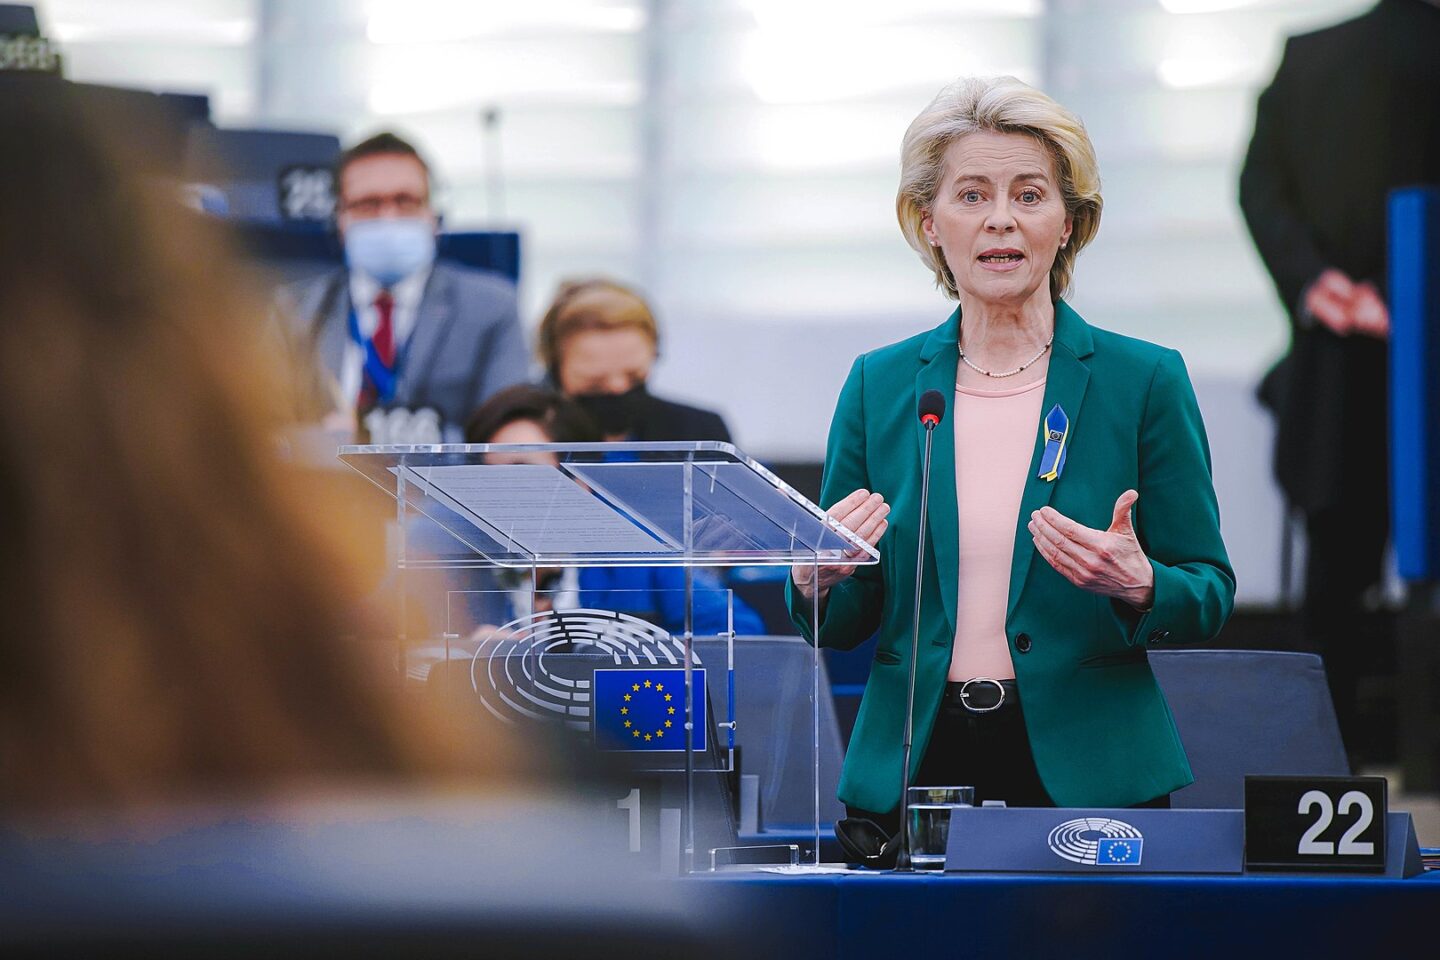 Musiałek: W dyskusji nad Europejskim Zielonym Ładem optymizmem chce się przysłonić realne wyzwania